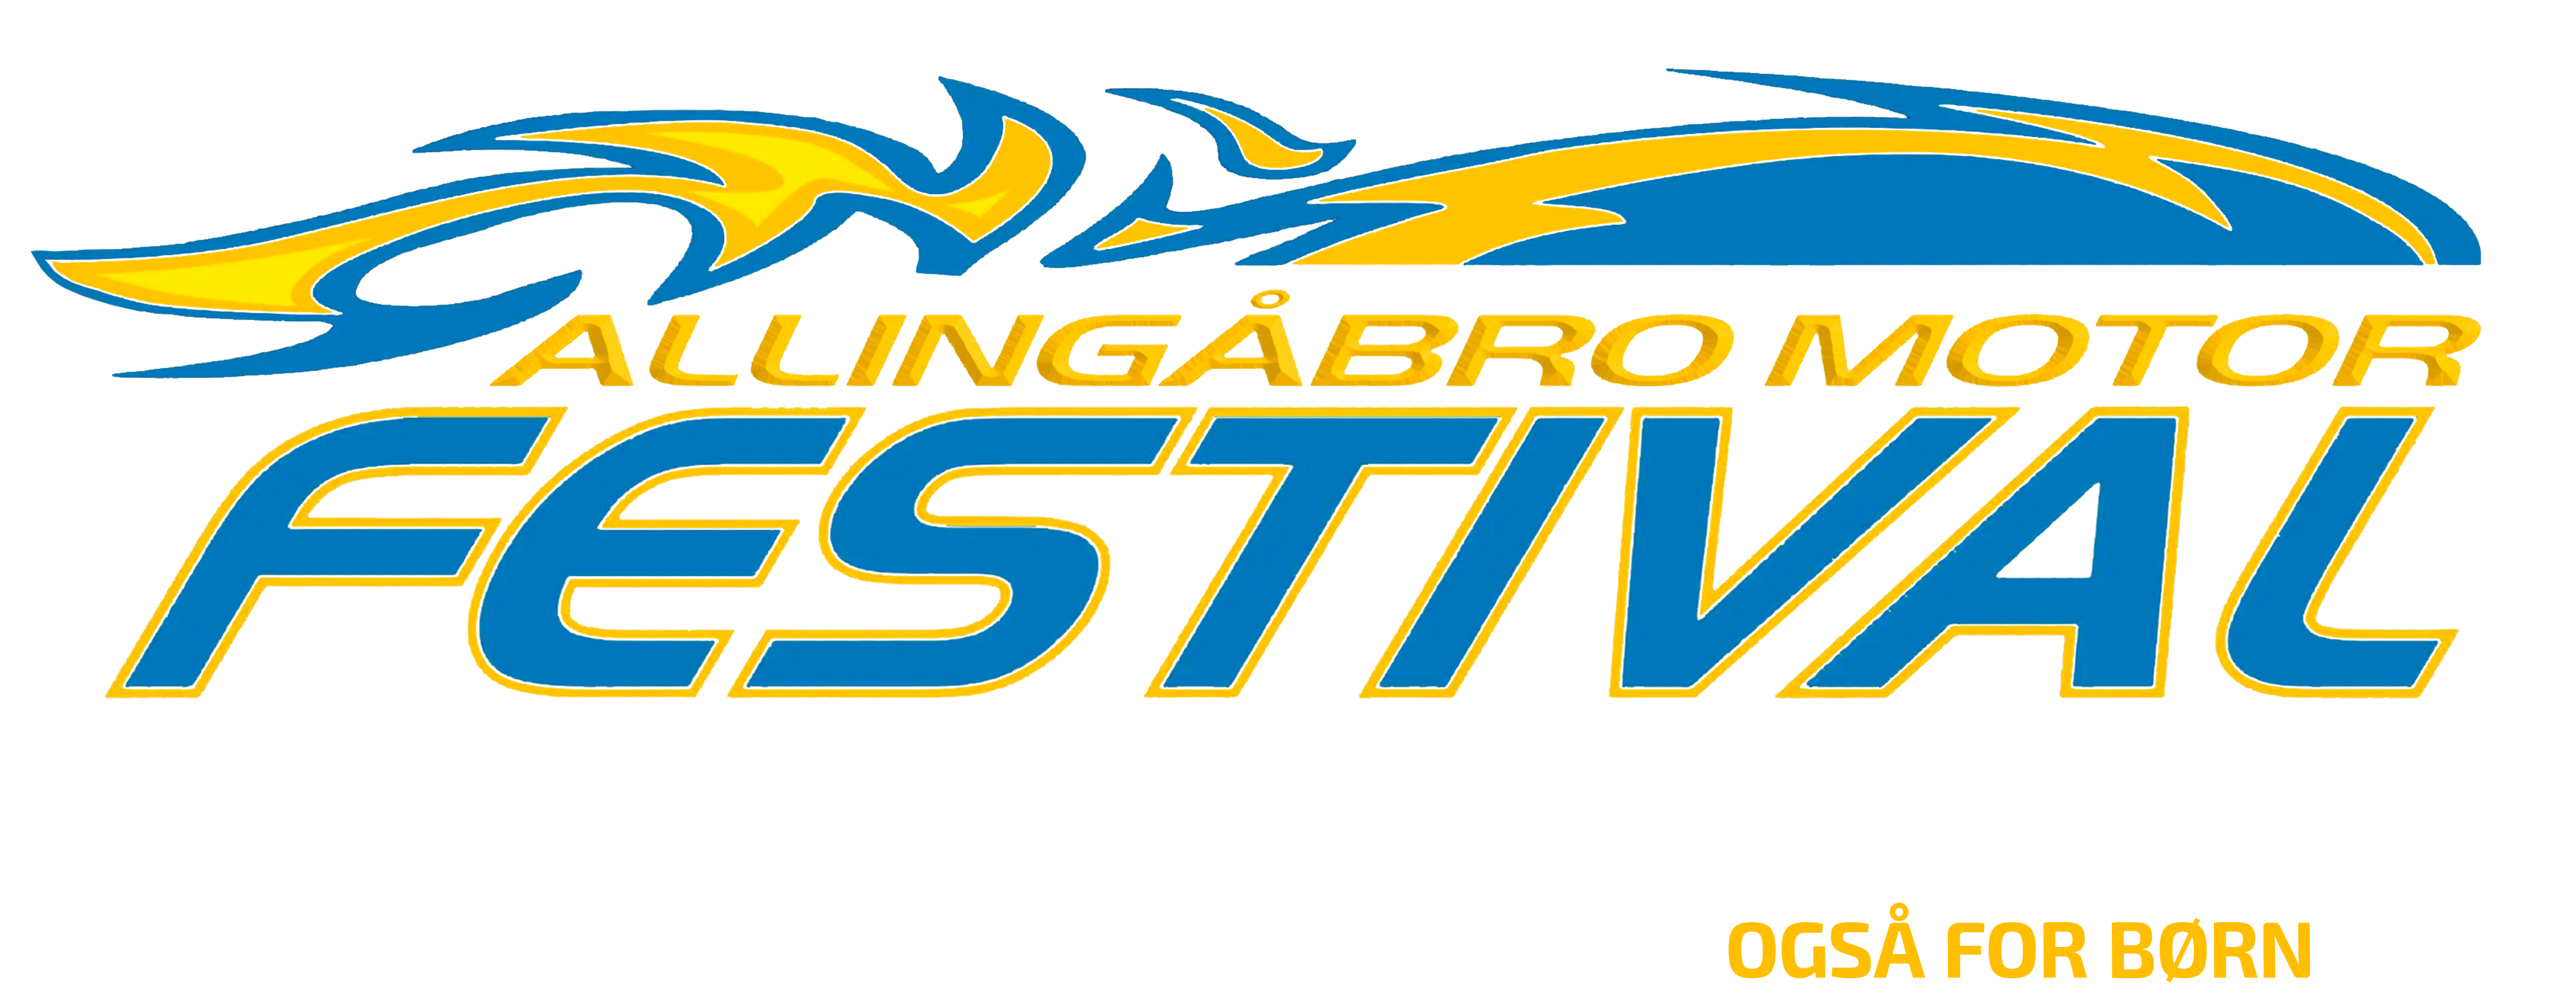 Allingåbro Motor Festival hvert år i maj